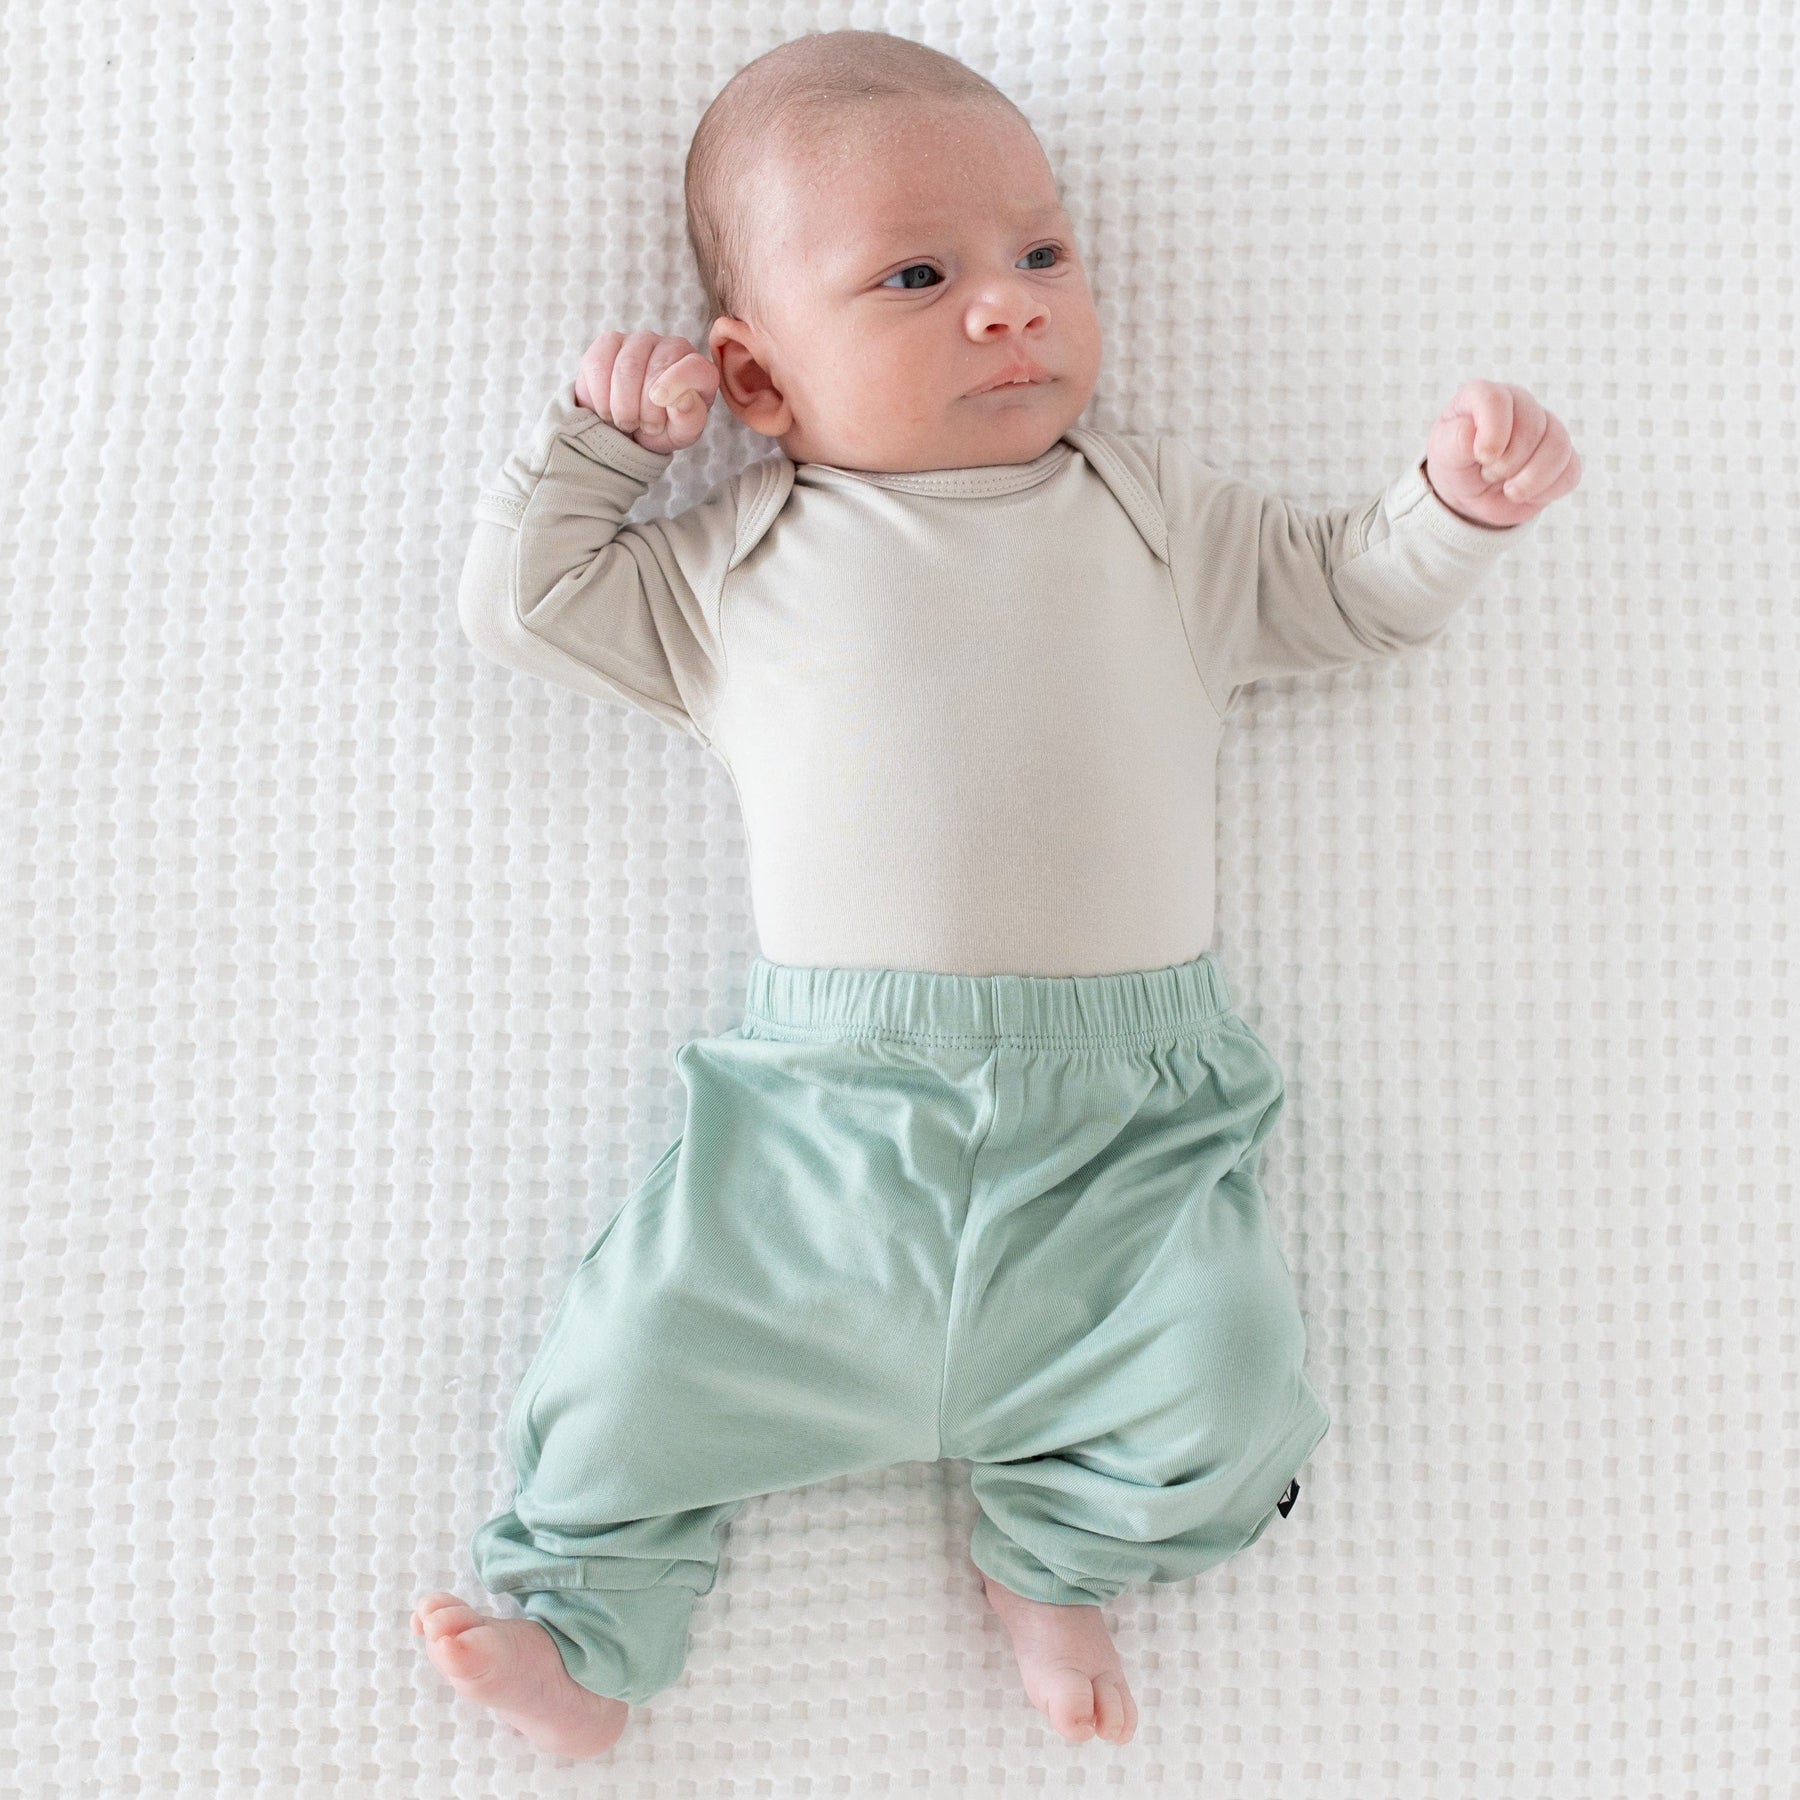 Baby wearing Kyte Baby Long Sleeve infant Bodysuit in Oat